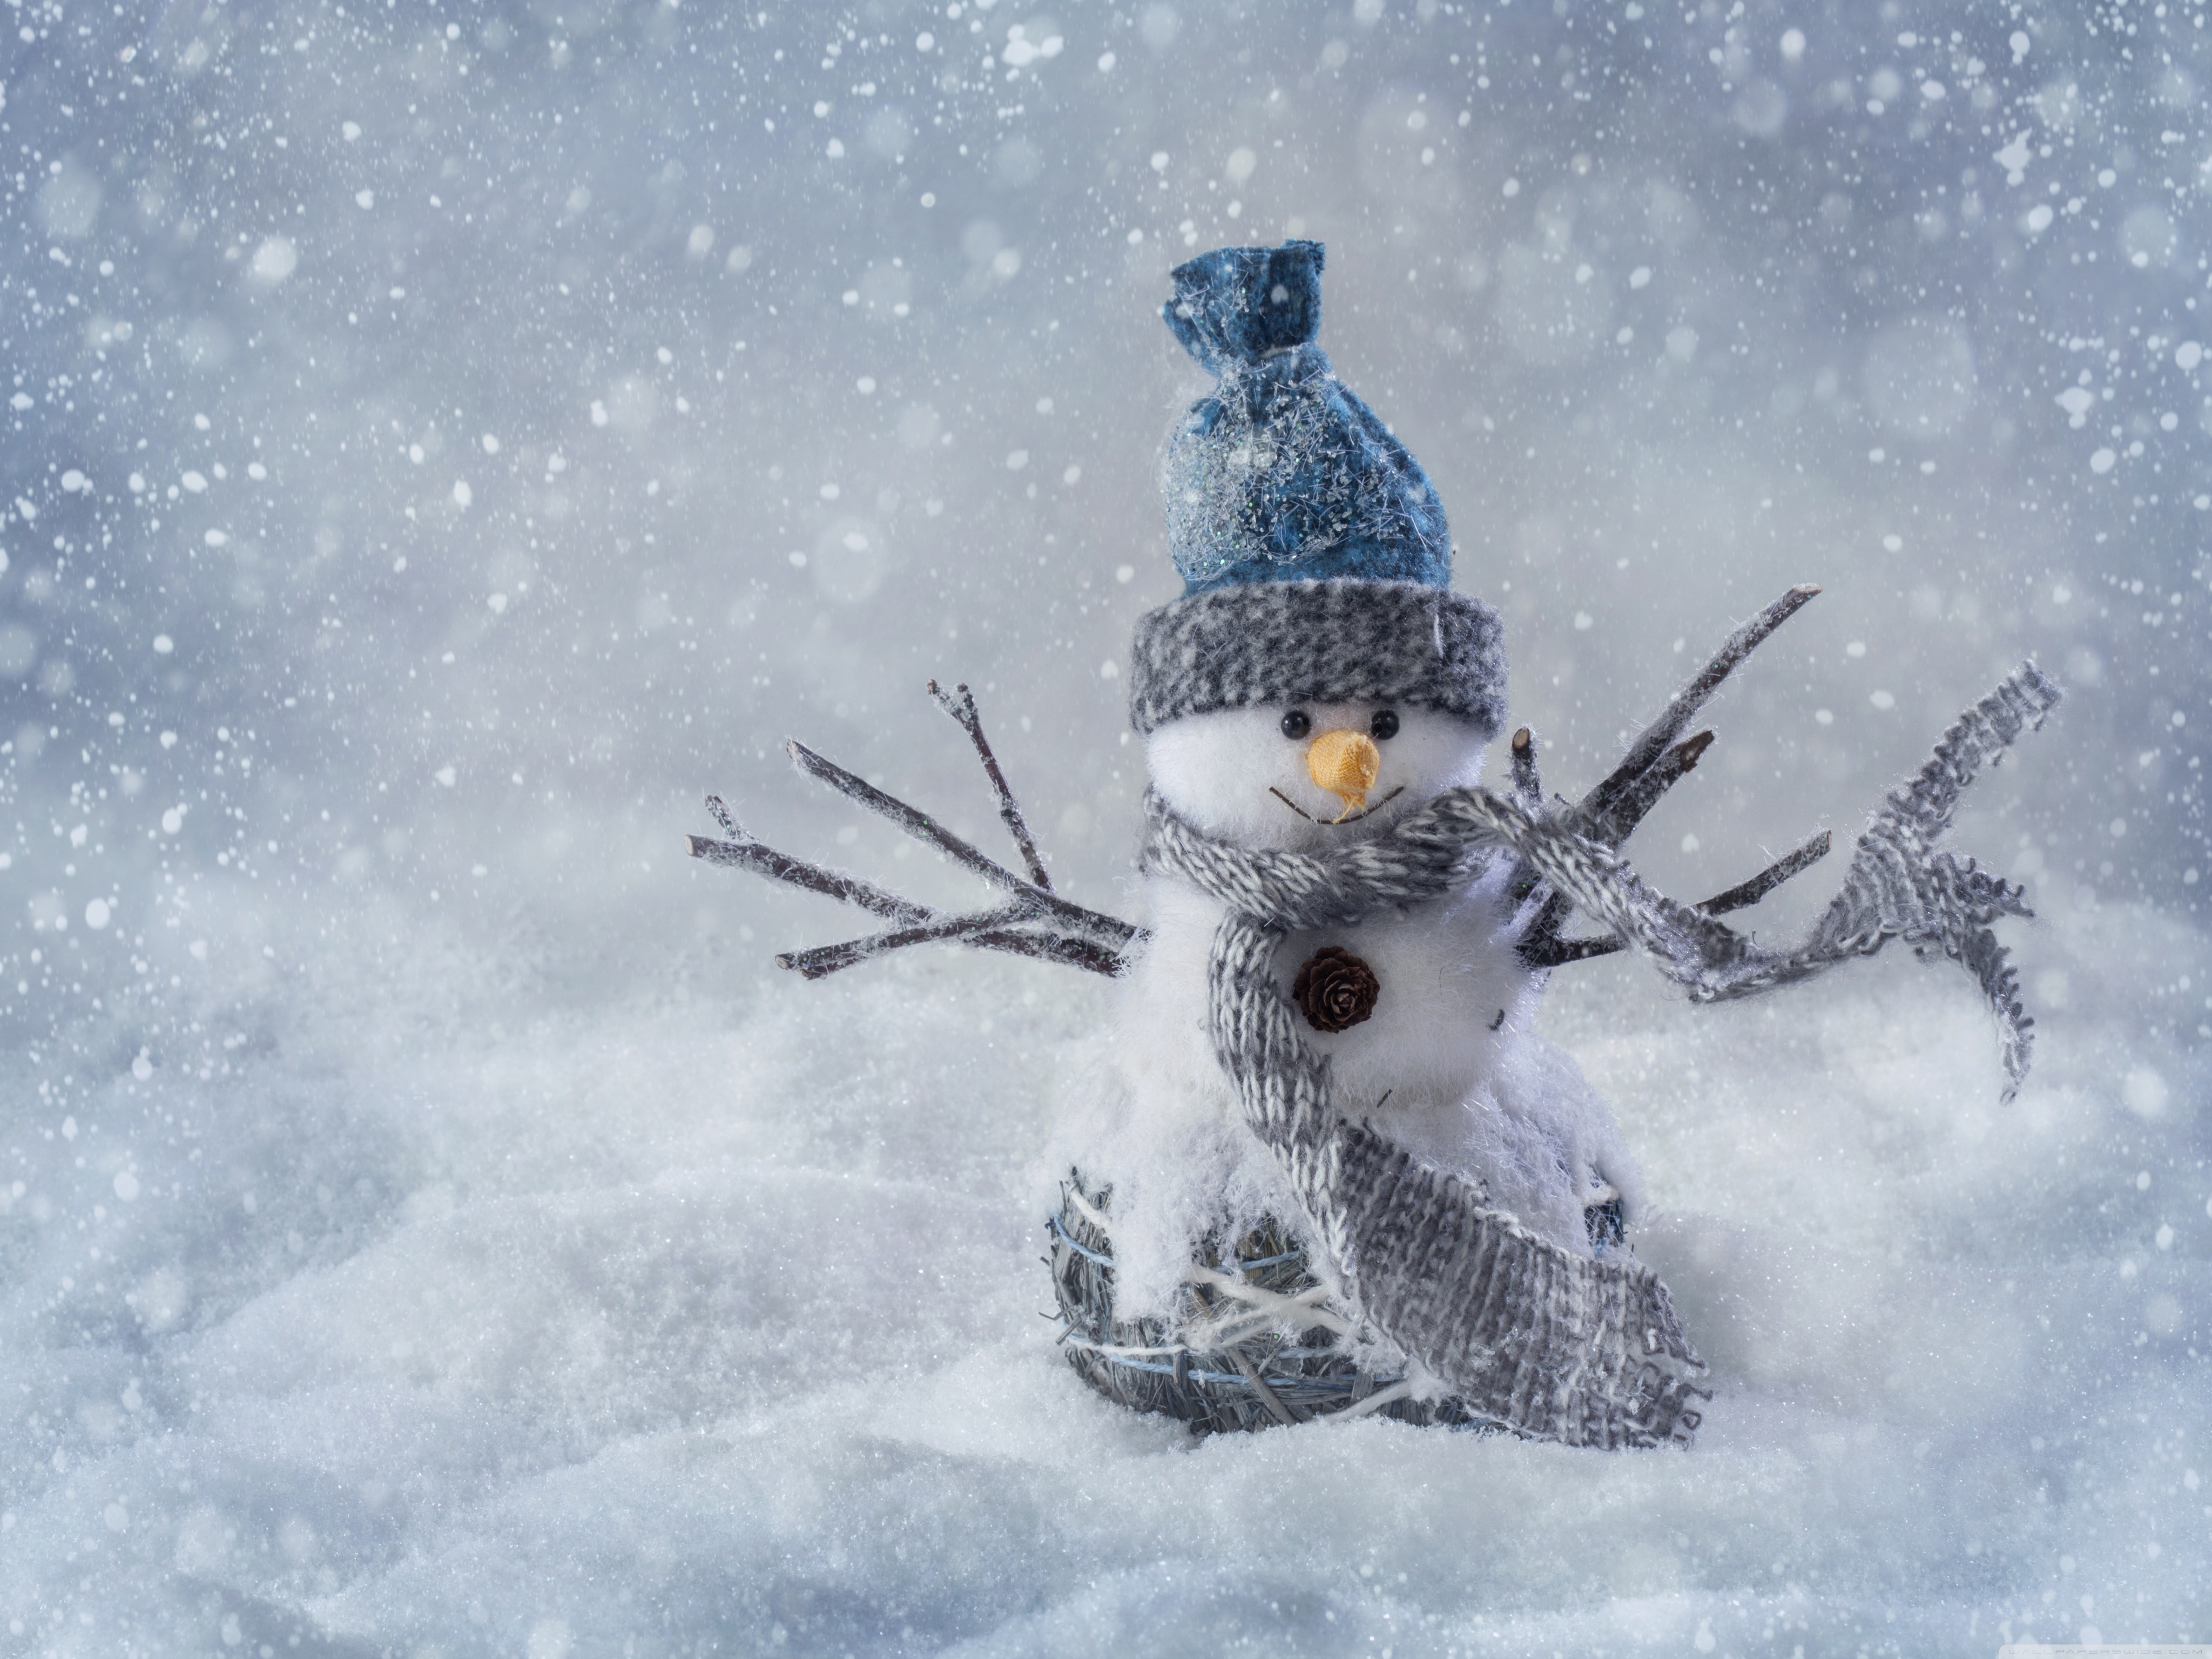 Christmas Snowman Craft 4k HD Desktop Wallpaper For Ultra